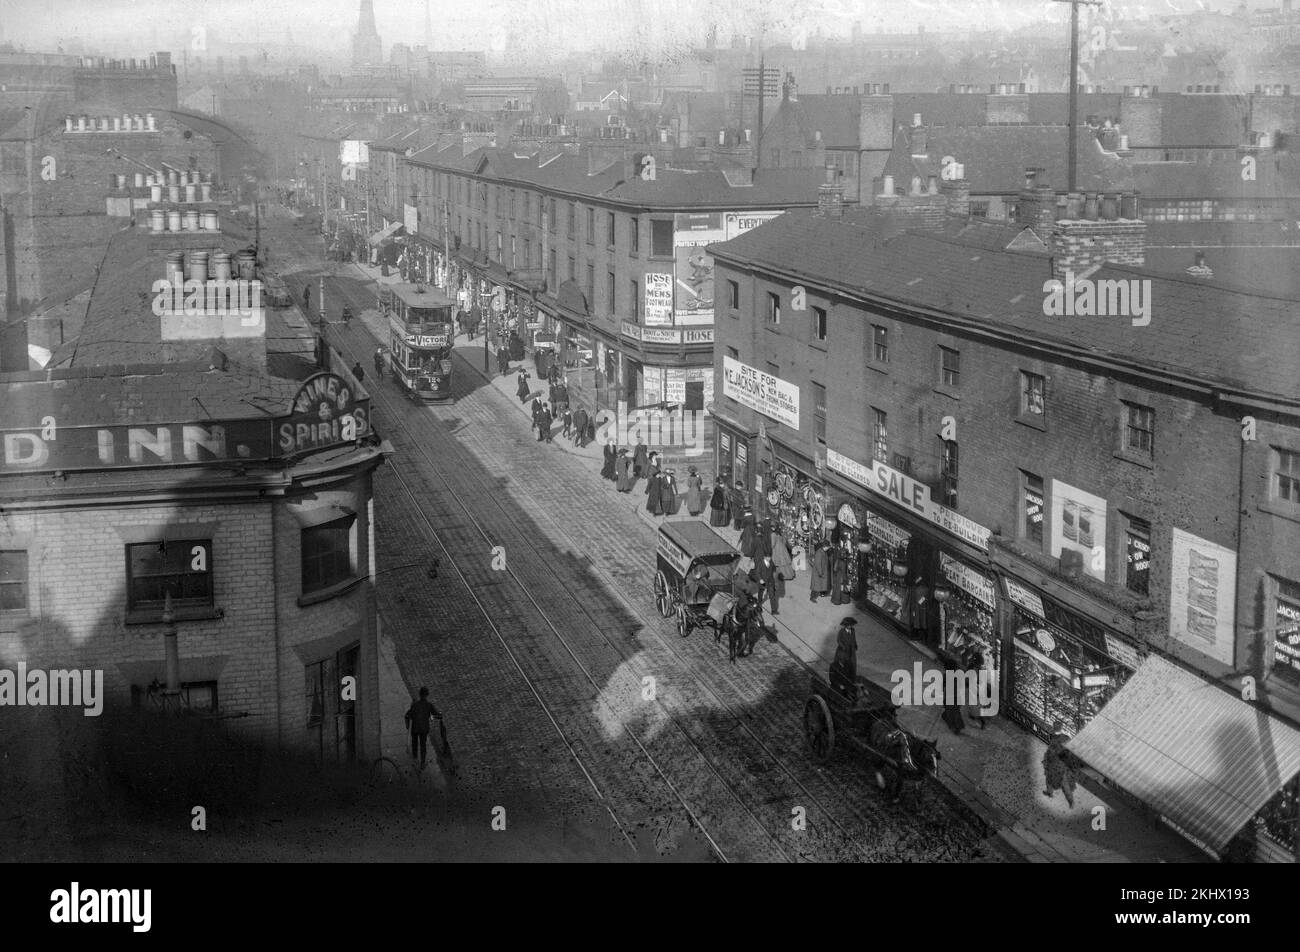 Una fotografia in bianco e nero del tardo Vittoriano che mostra una strada trafficata a Nottingham, Inghilterra. Ci sono carrozze trainate da cavalli, negozi e un autobus Trolly, insieme a molte persone. Foto Stock